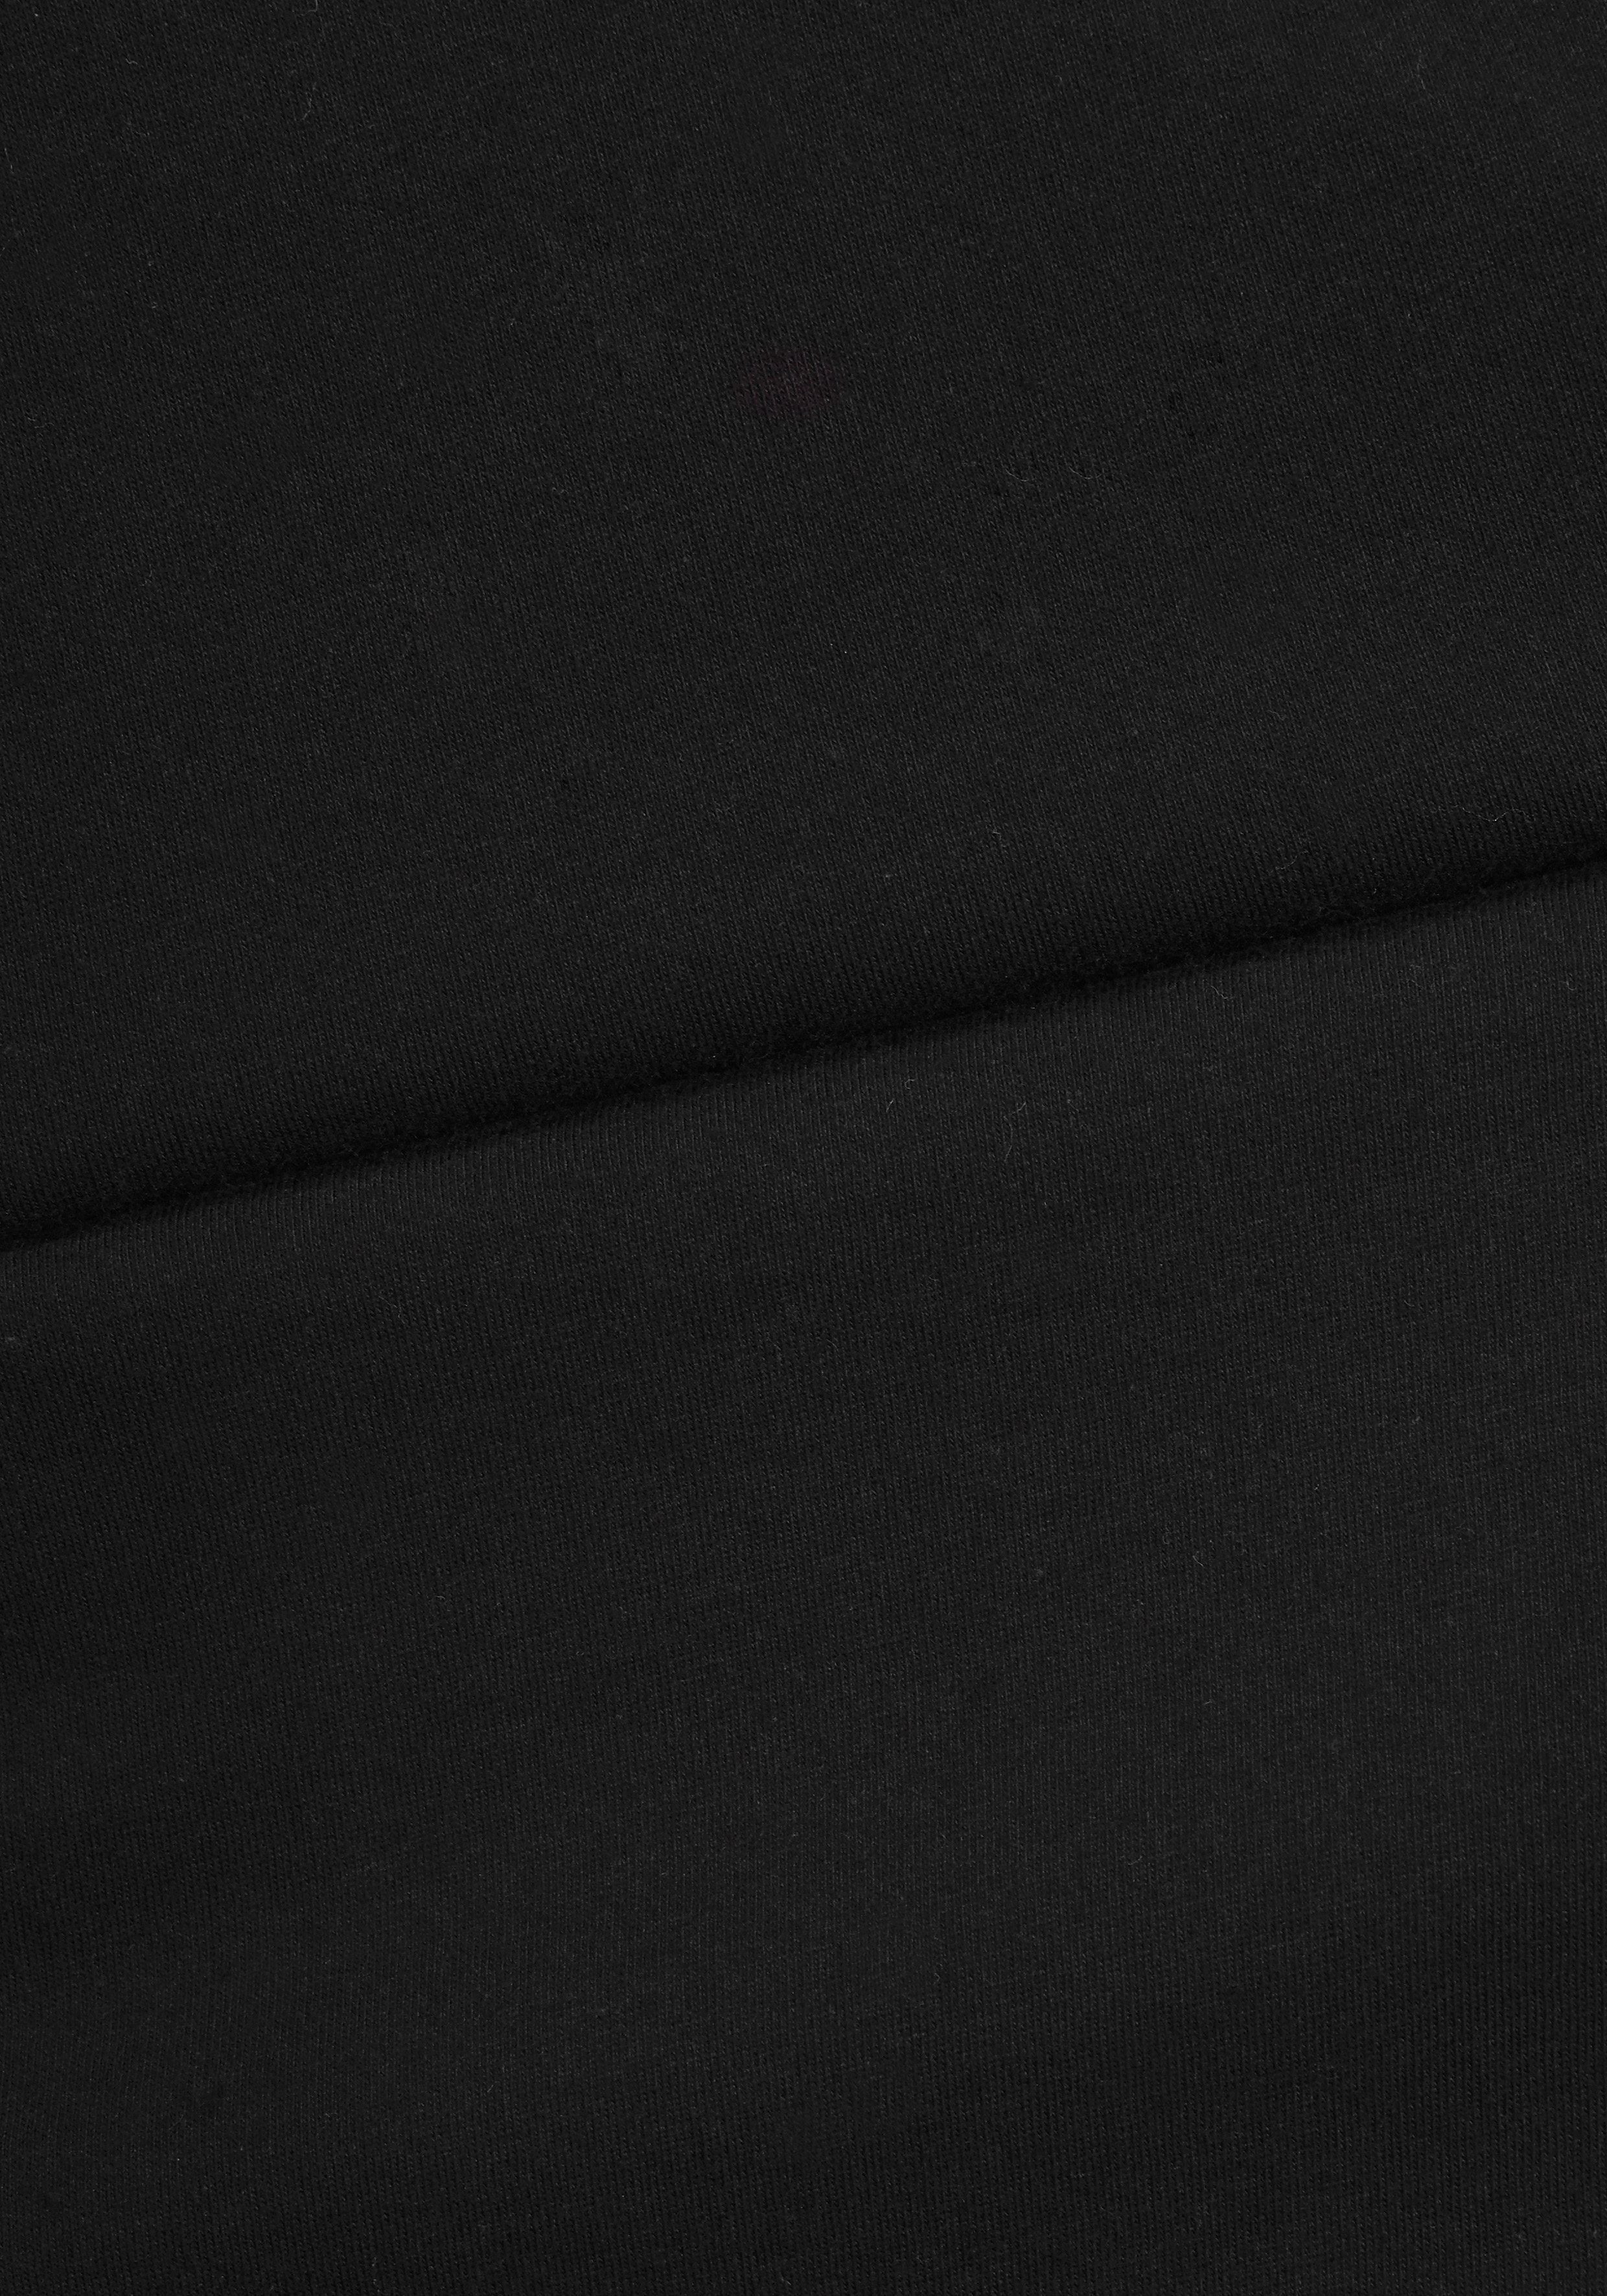 Hose gemusterte mit tlg., Stück) Eingrifftaschen schwarz-gemustert Pyjama 1 (2 Buffalo